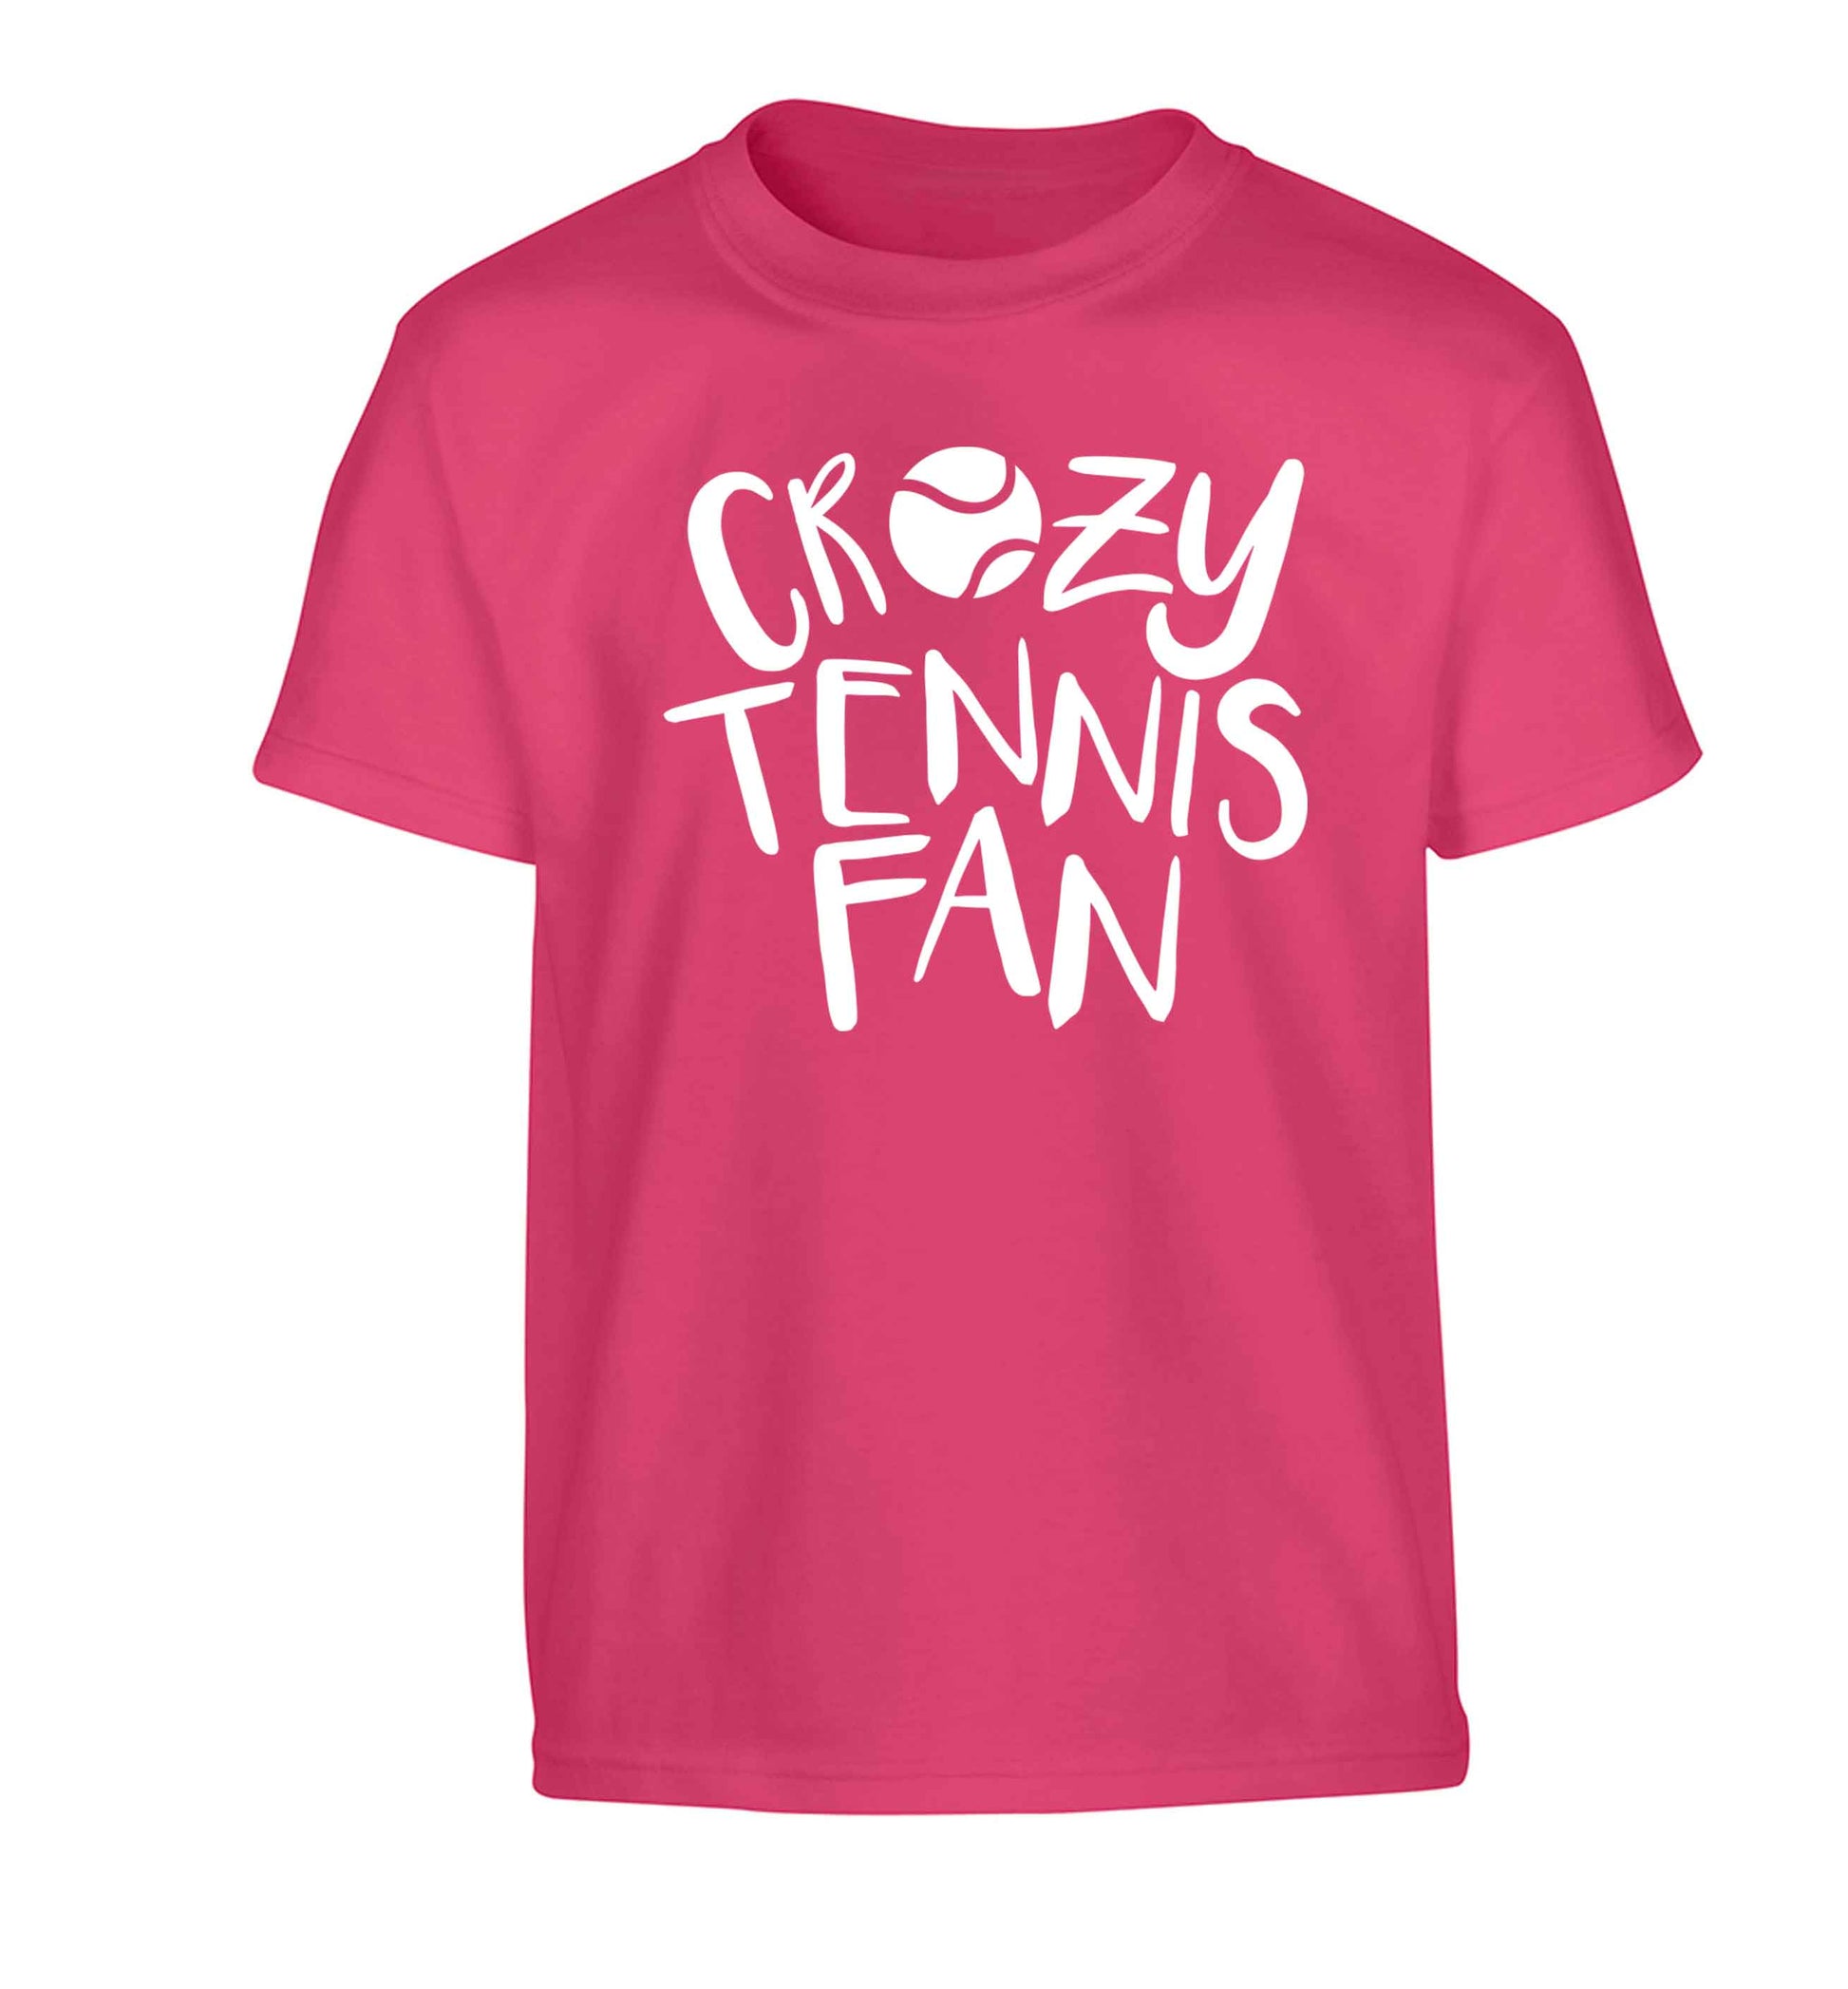 Crazy tennis fan Children's pink Tshirt 12-13 Years